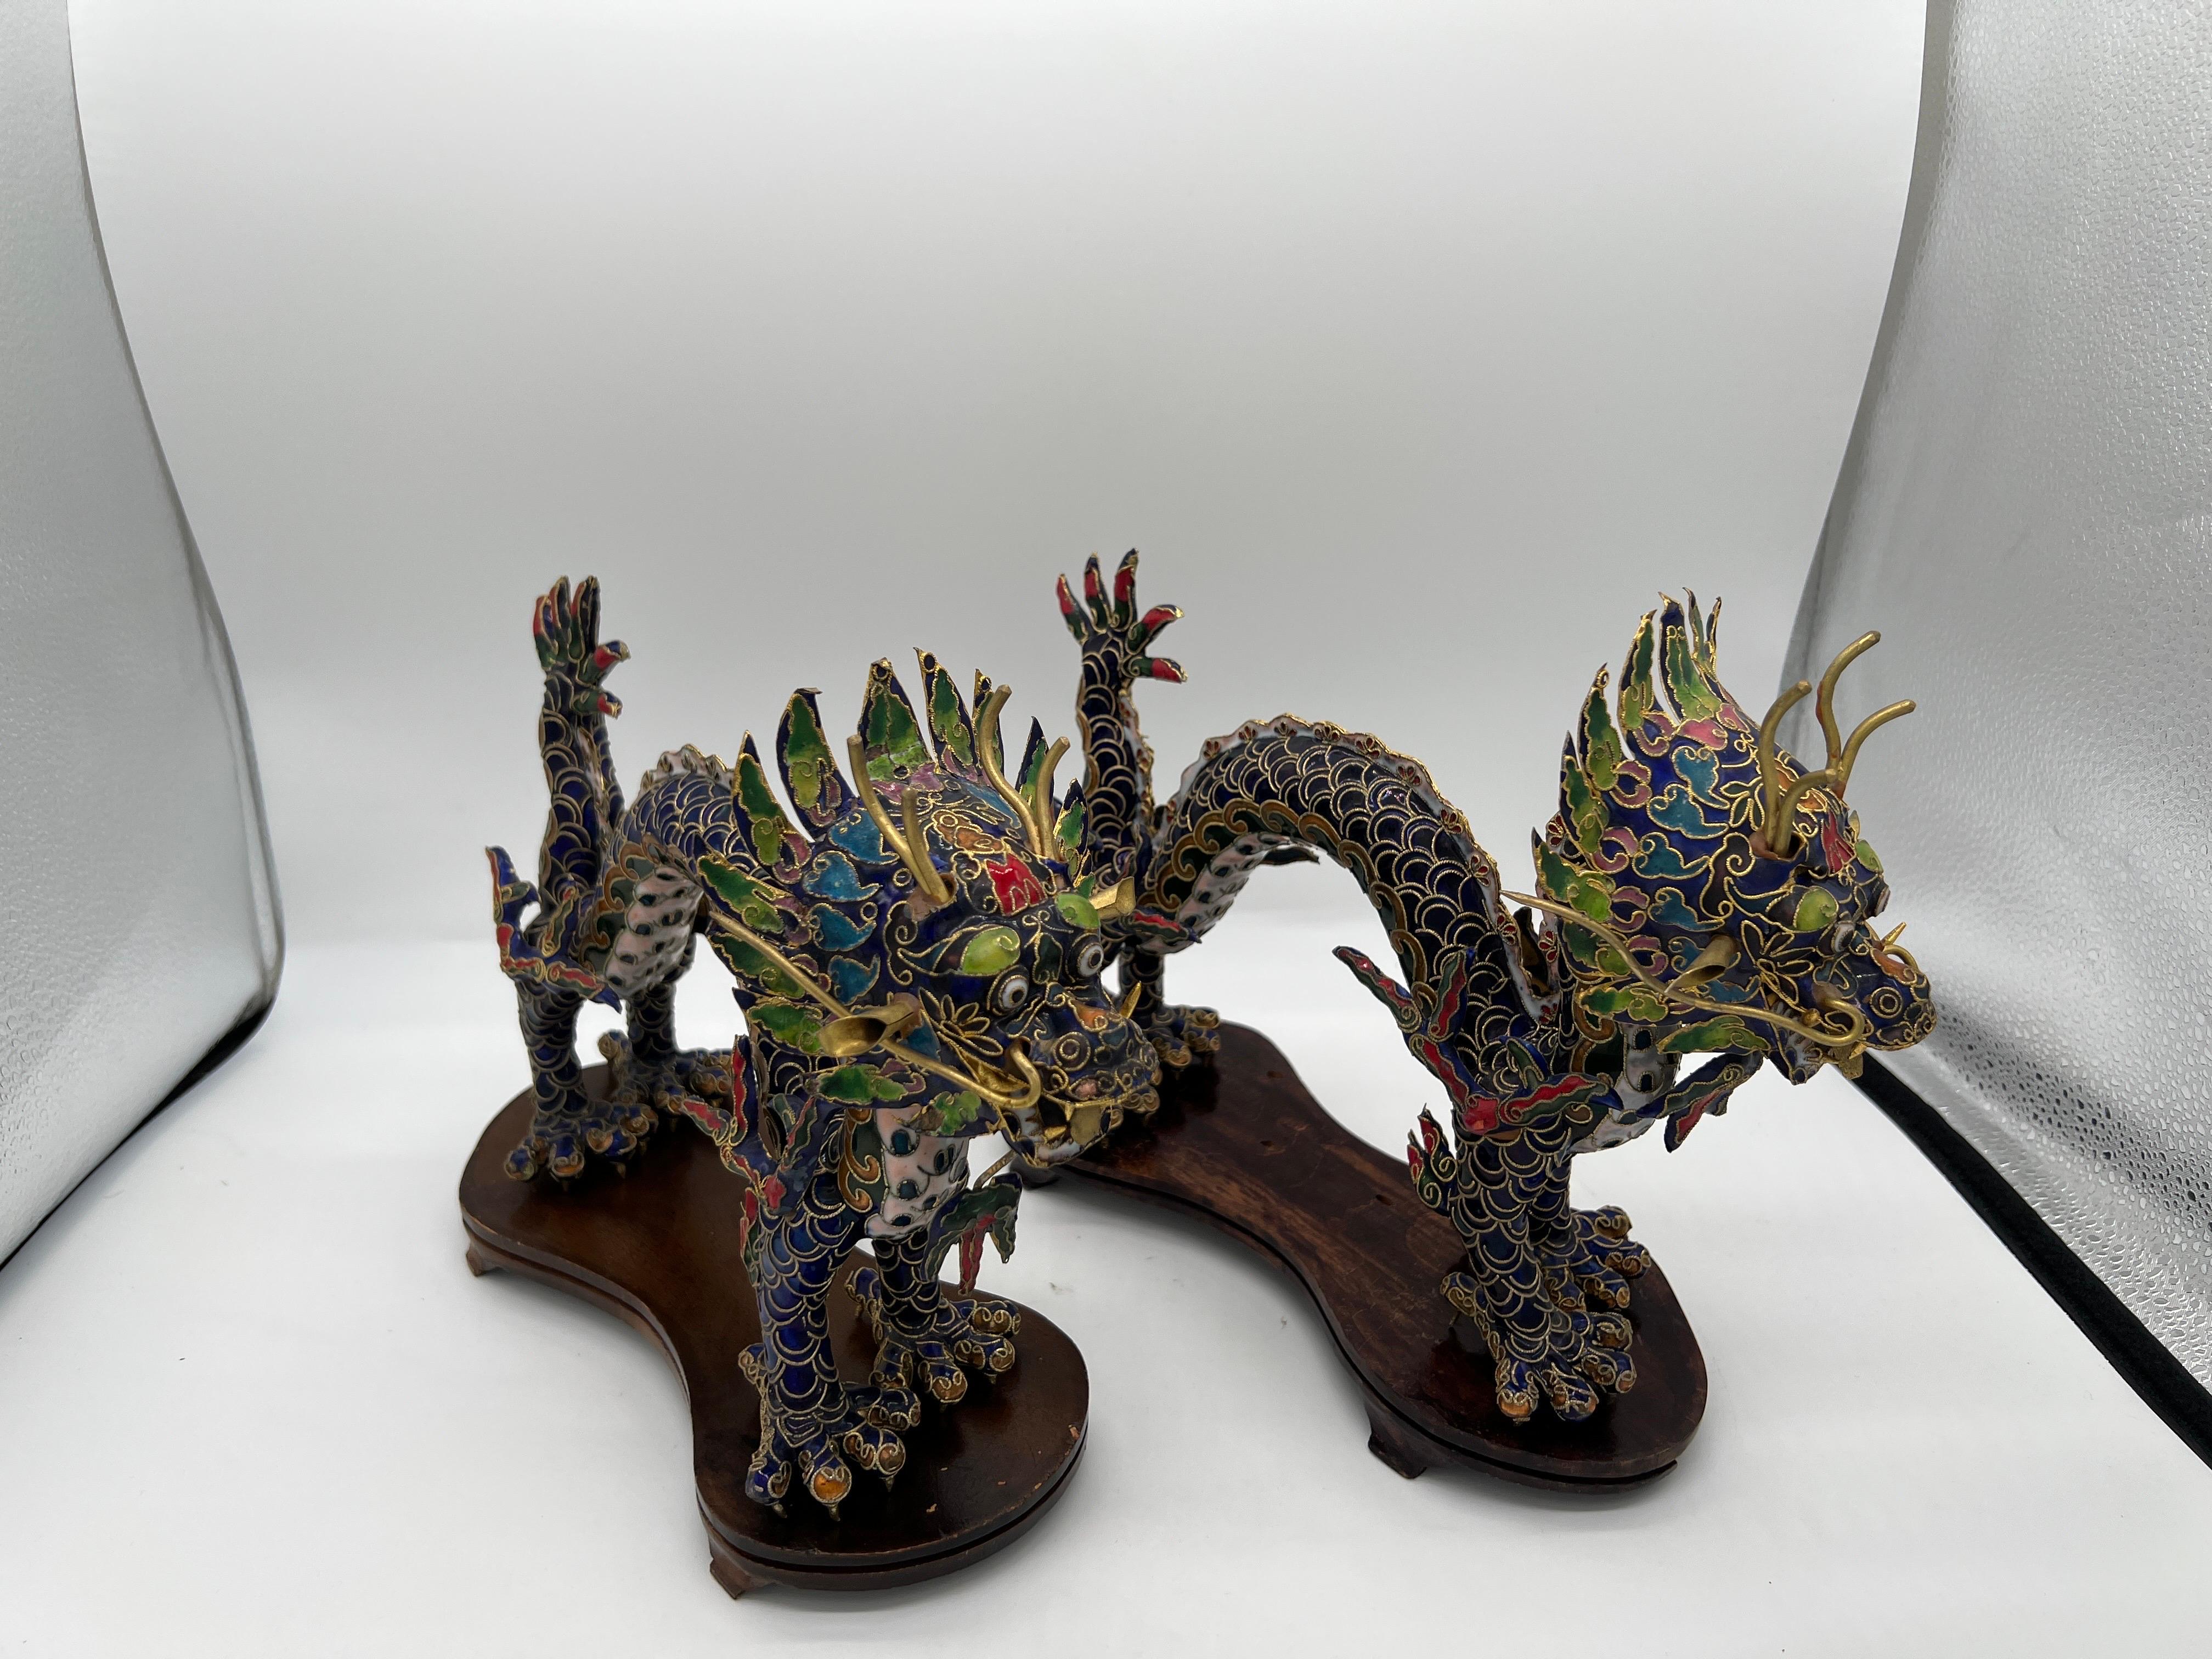 Chinesisch, 20. Jahrhundert.

Ein Paar Cloisonné-Drachenfiguren im chinesischen Exportstil auf Ständern. Jeder Drache ist detailliert mit Messingdrähten und Handemail auf den Oberflächen verziert. Chinesische Drachen sind oft ein Zeichen für Glück